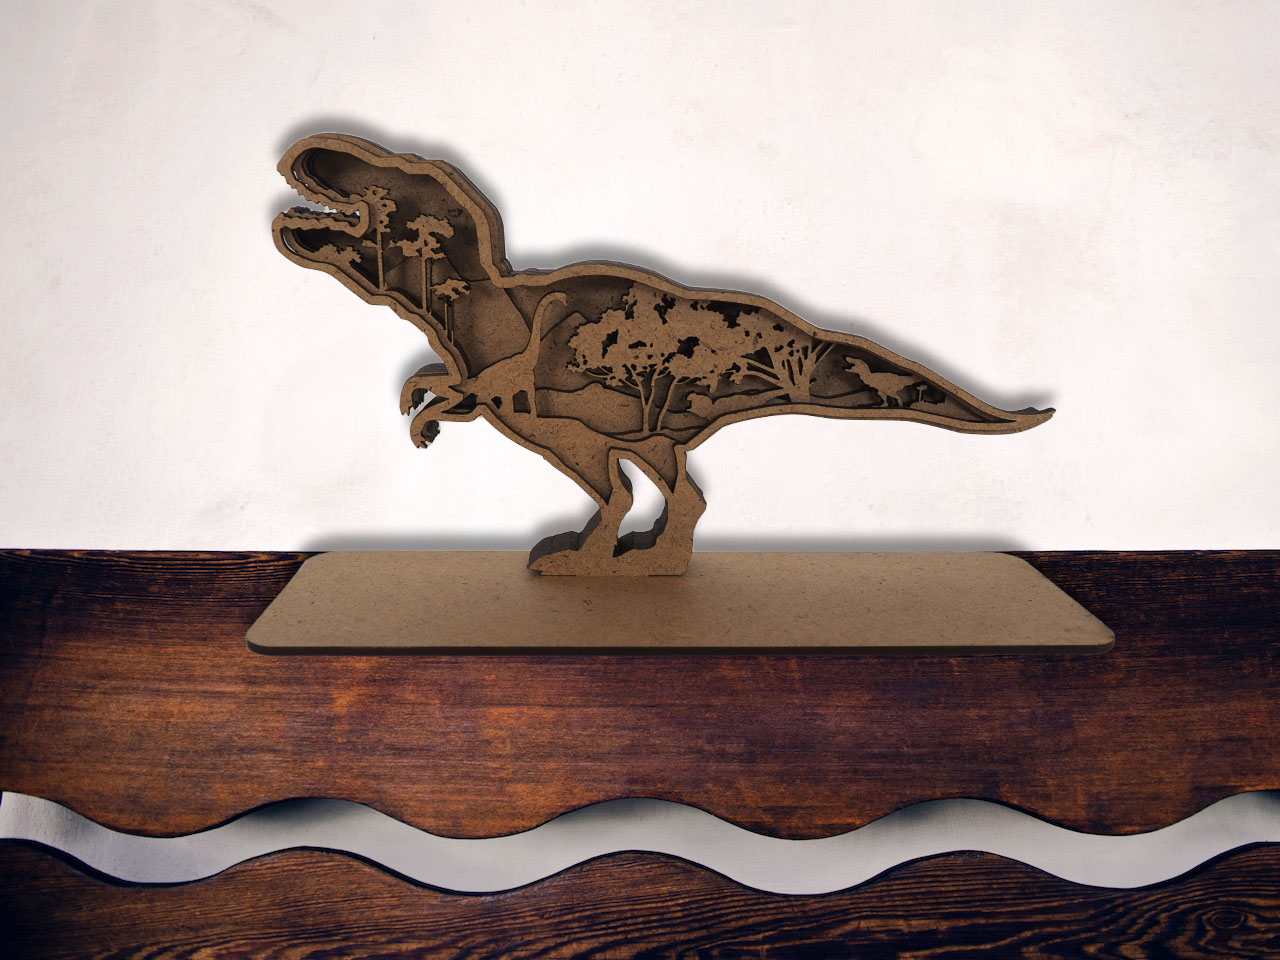 Objet décoratif T-rex en bois sur fond blanc vue de face mis en situation sur une table